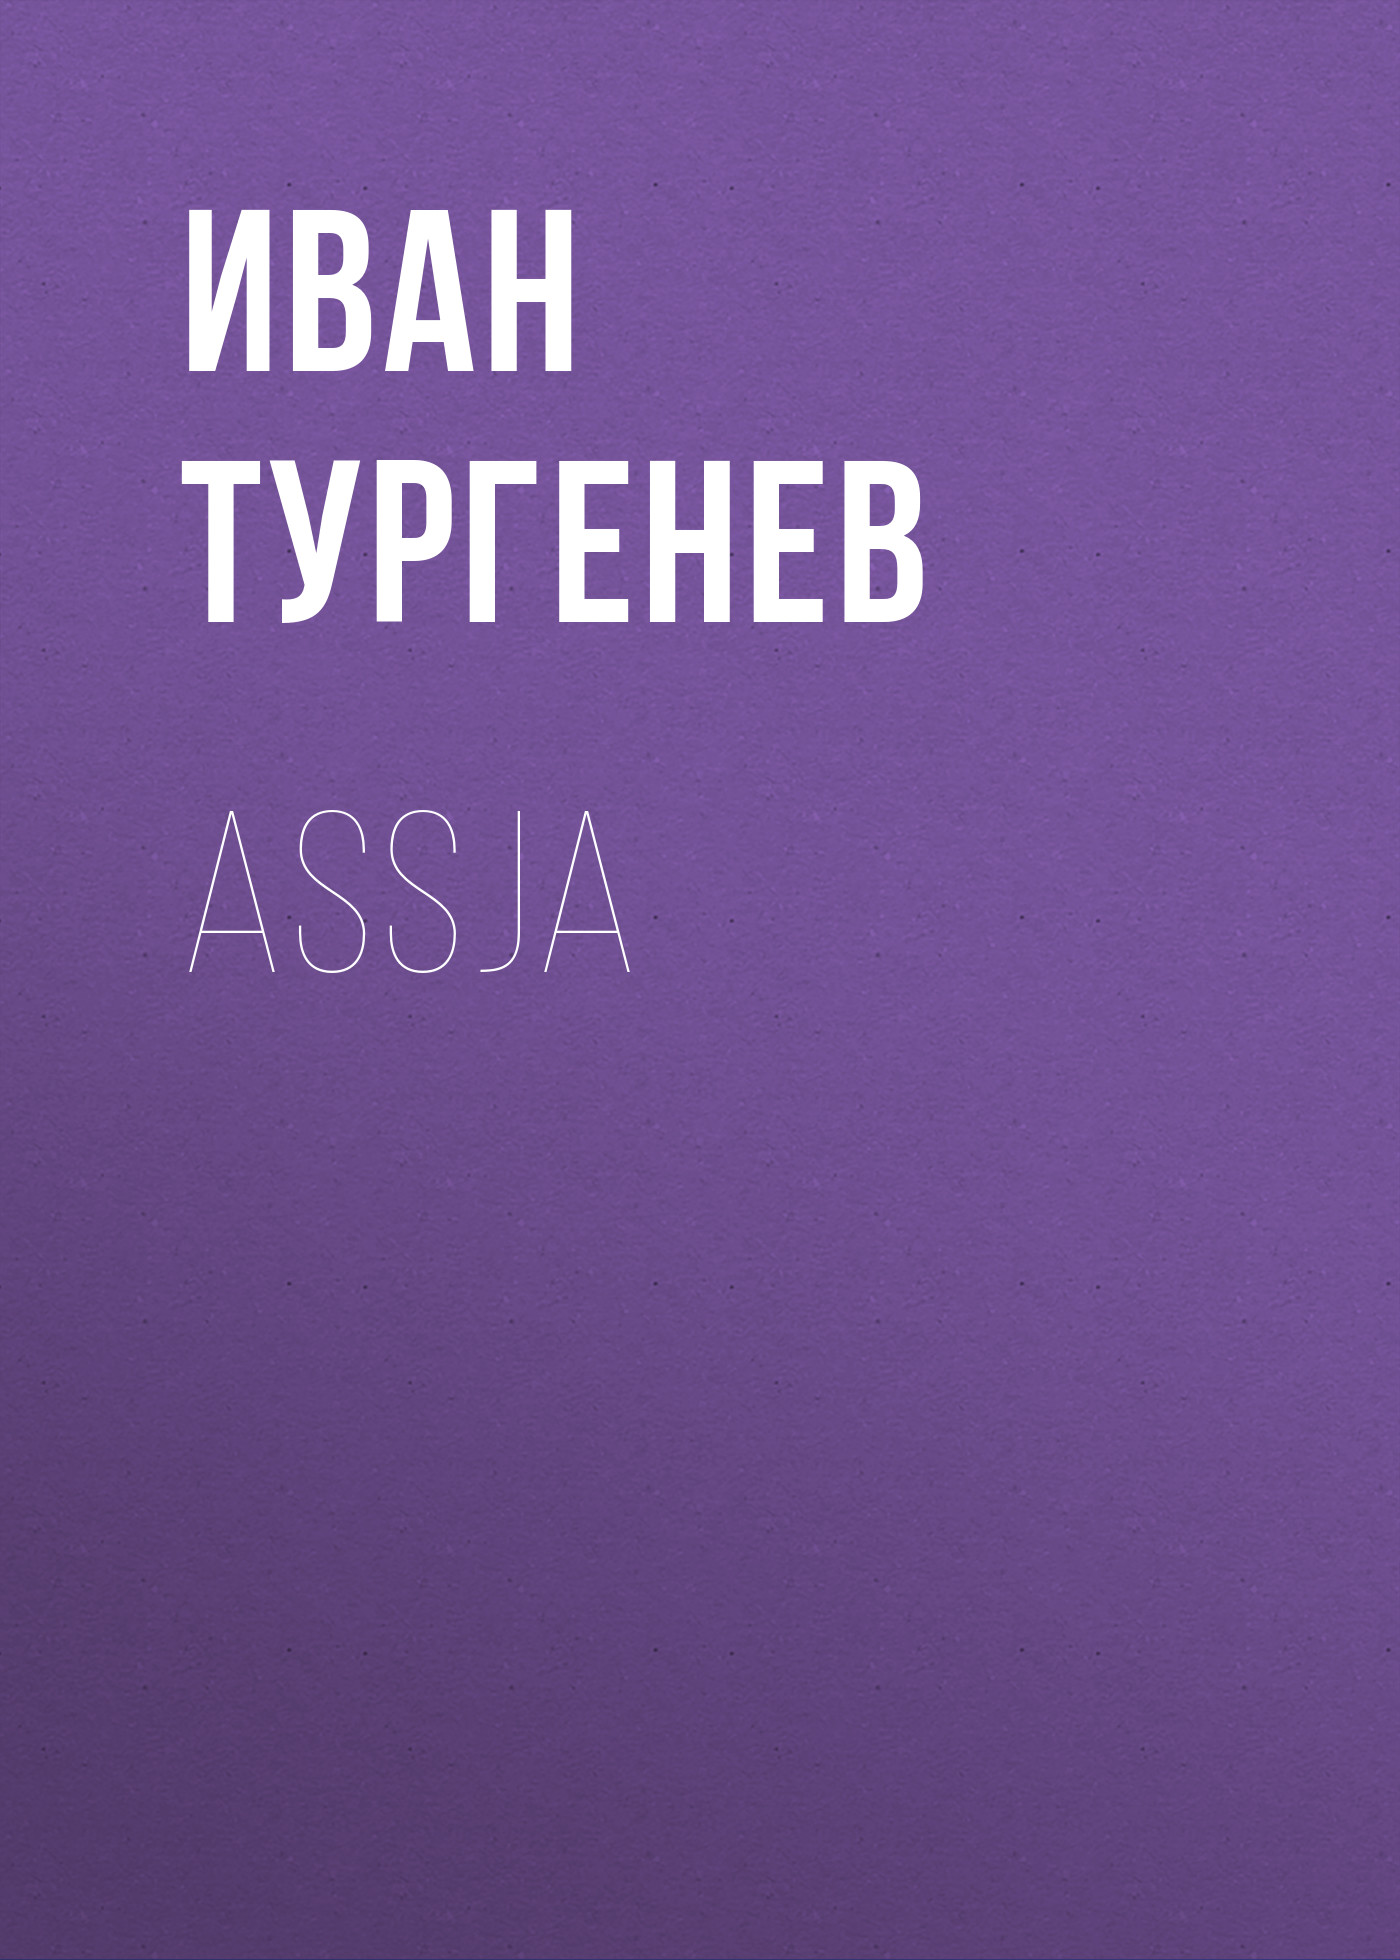 Книга Assja из серии , созданная Iwan Turgenew, может относится к жанру Русская классика. Стоимость электронной книги Assja с идентификатором 48633636 составляет 0 руб.